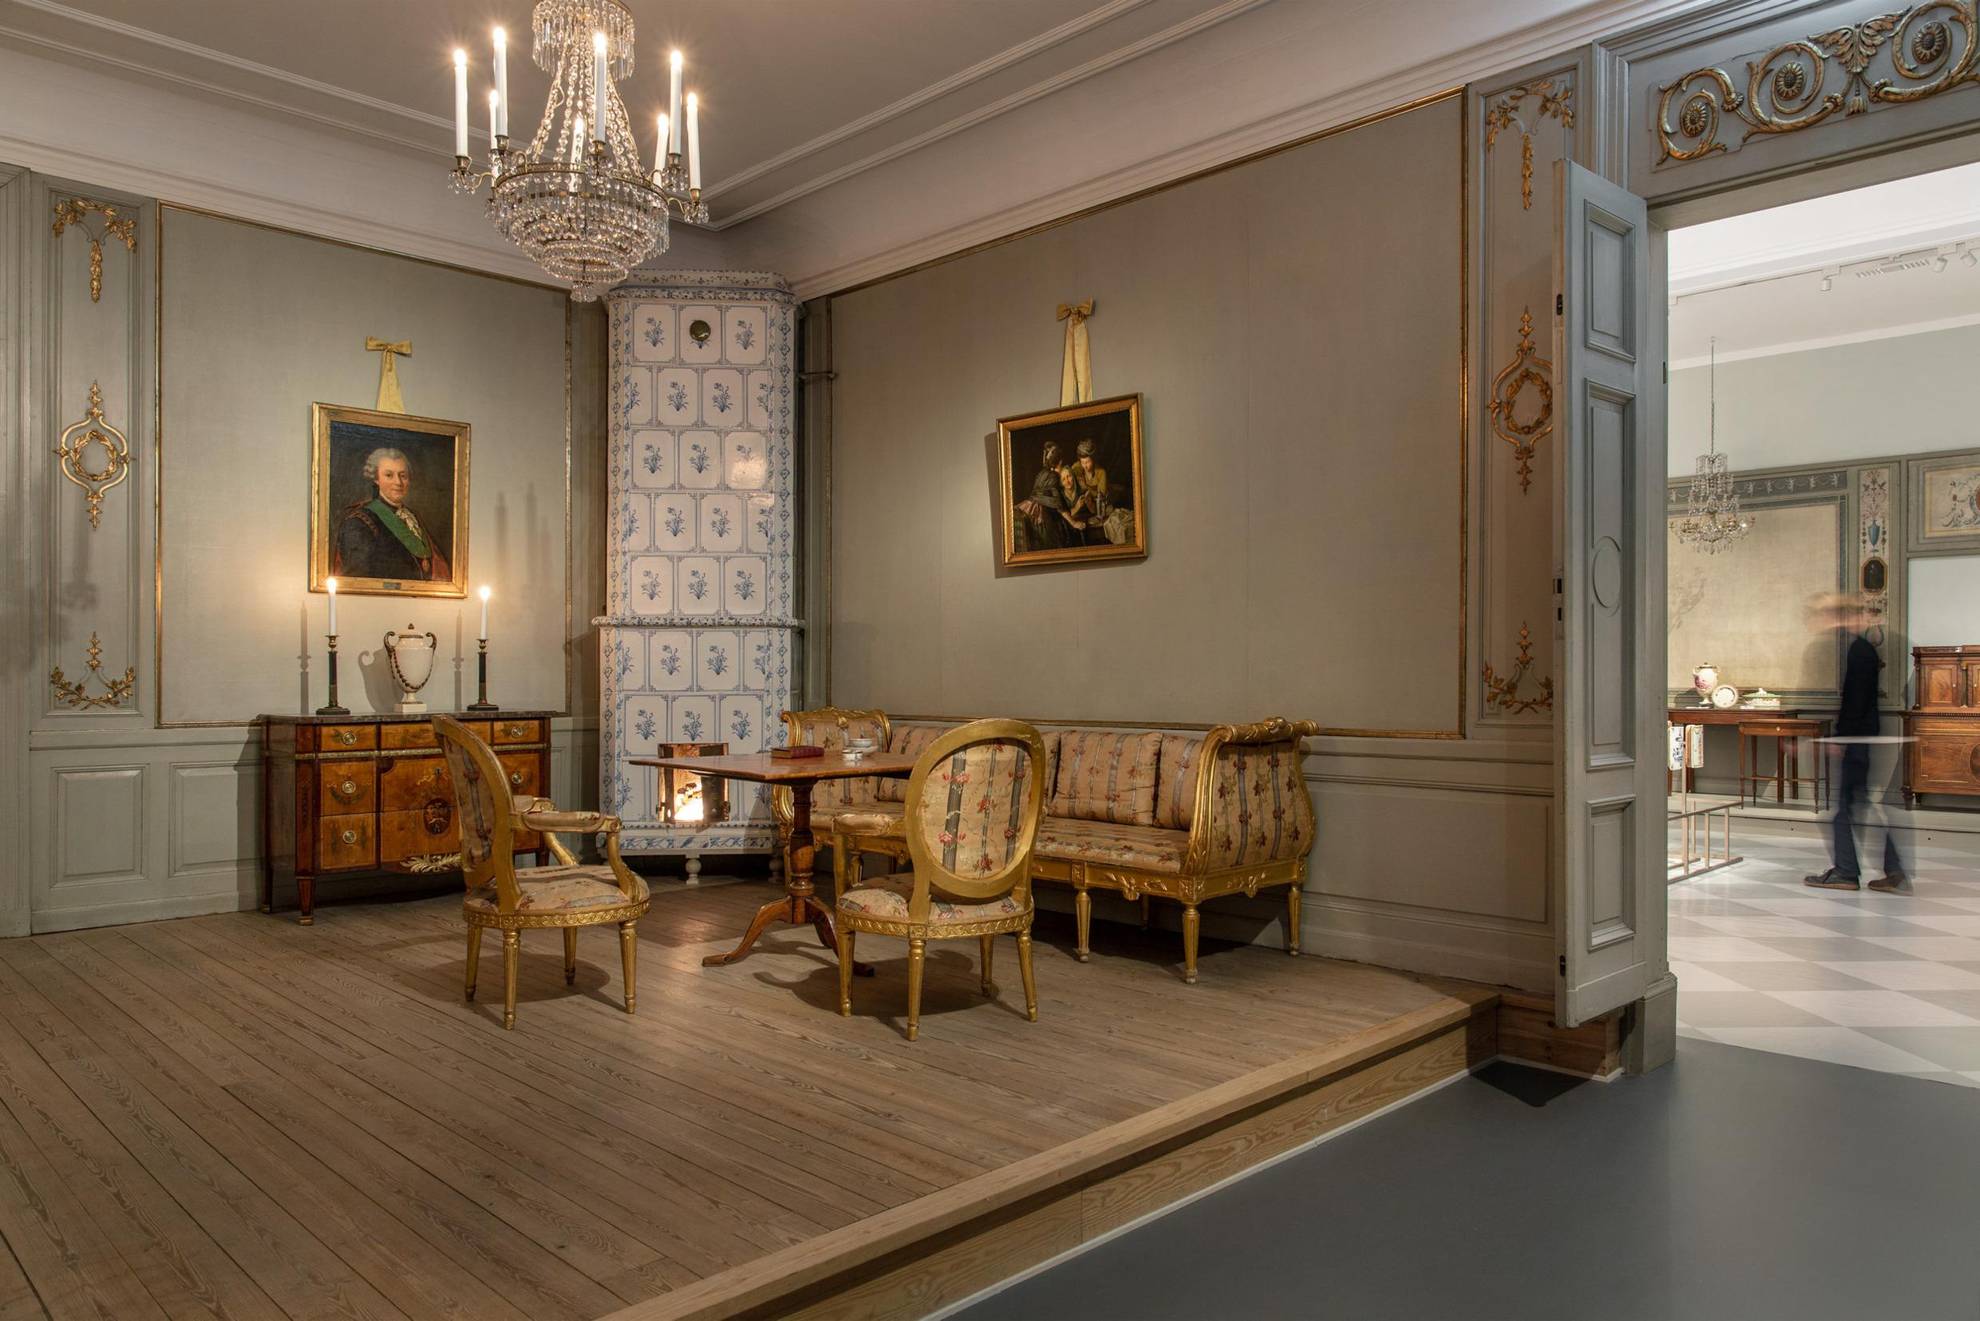 Mobilier du 18e siècle dans une exposition. On voit sur la photo un poêle en faïence, un canapé et deux chaises, une table et une commode, un lustre en cristal suspendu au plafond et deux tableaux au mur.